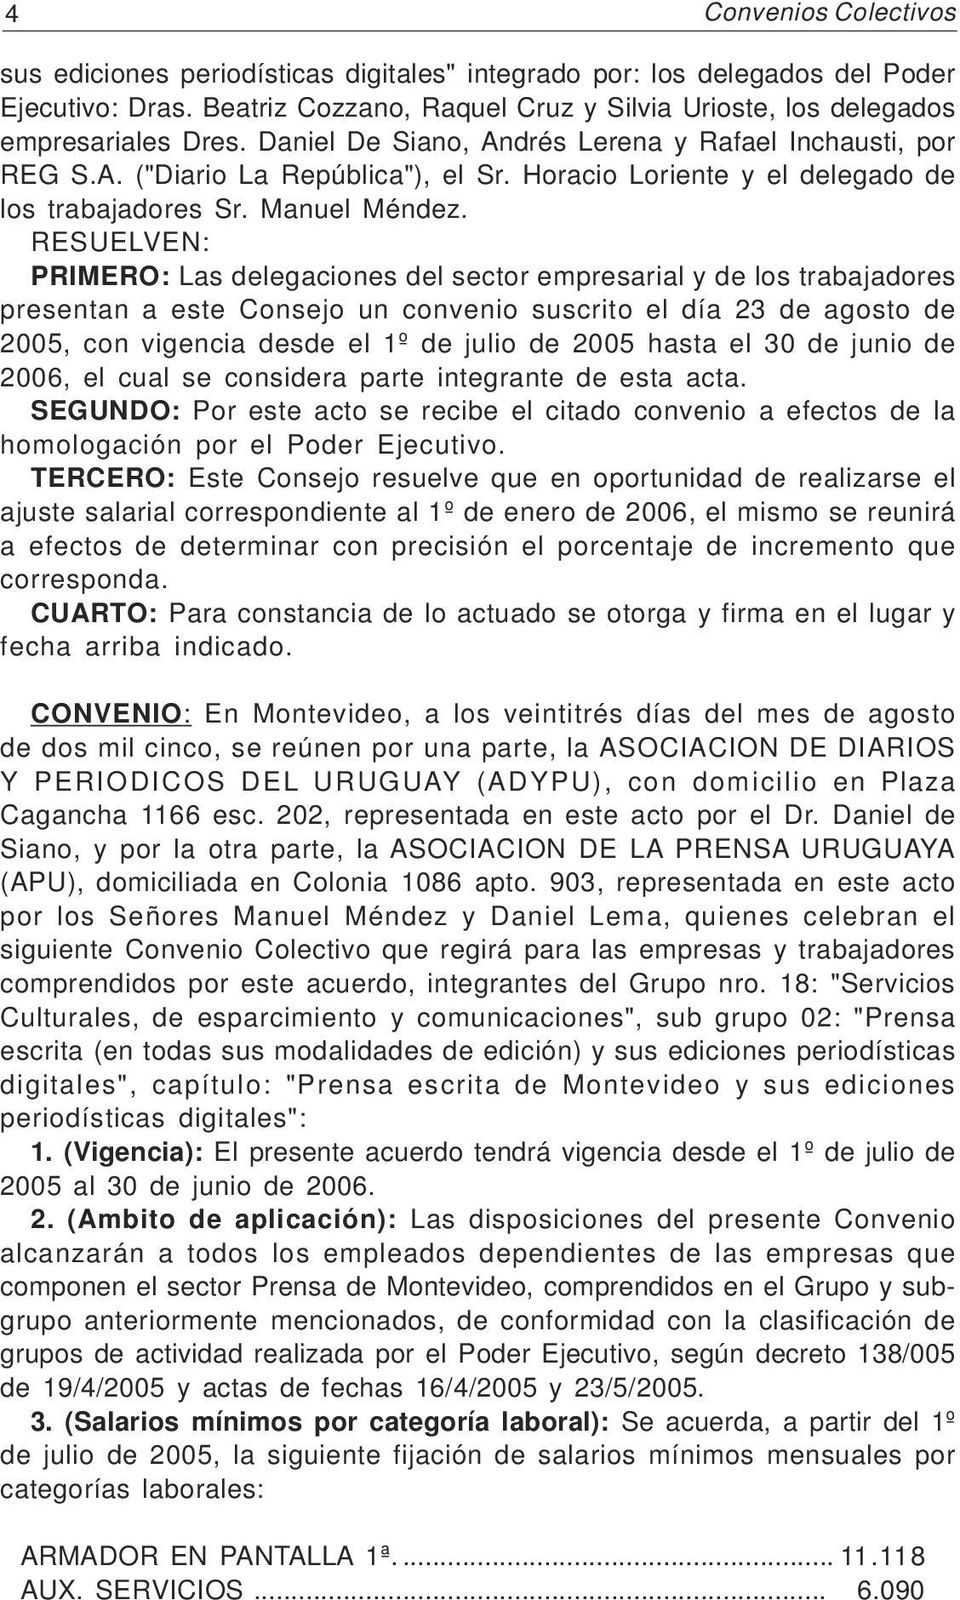 RESUELVEN: PRIMERO: Las delegaciones del sector empresarial y de los trabajadores presentan a este Consejo un convenio suscrito el día 23 de agosto de 2005, con vigencia desde el 1º de julio de 2005